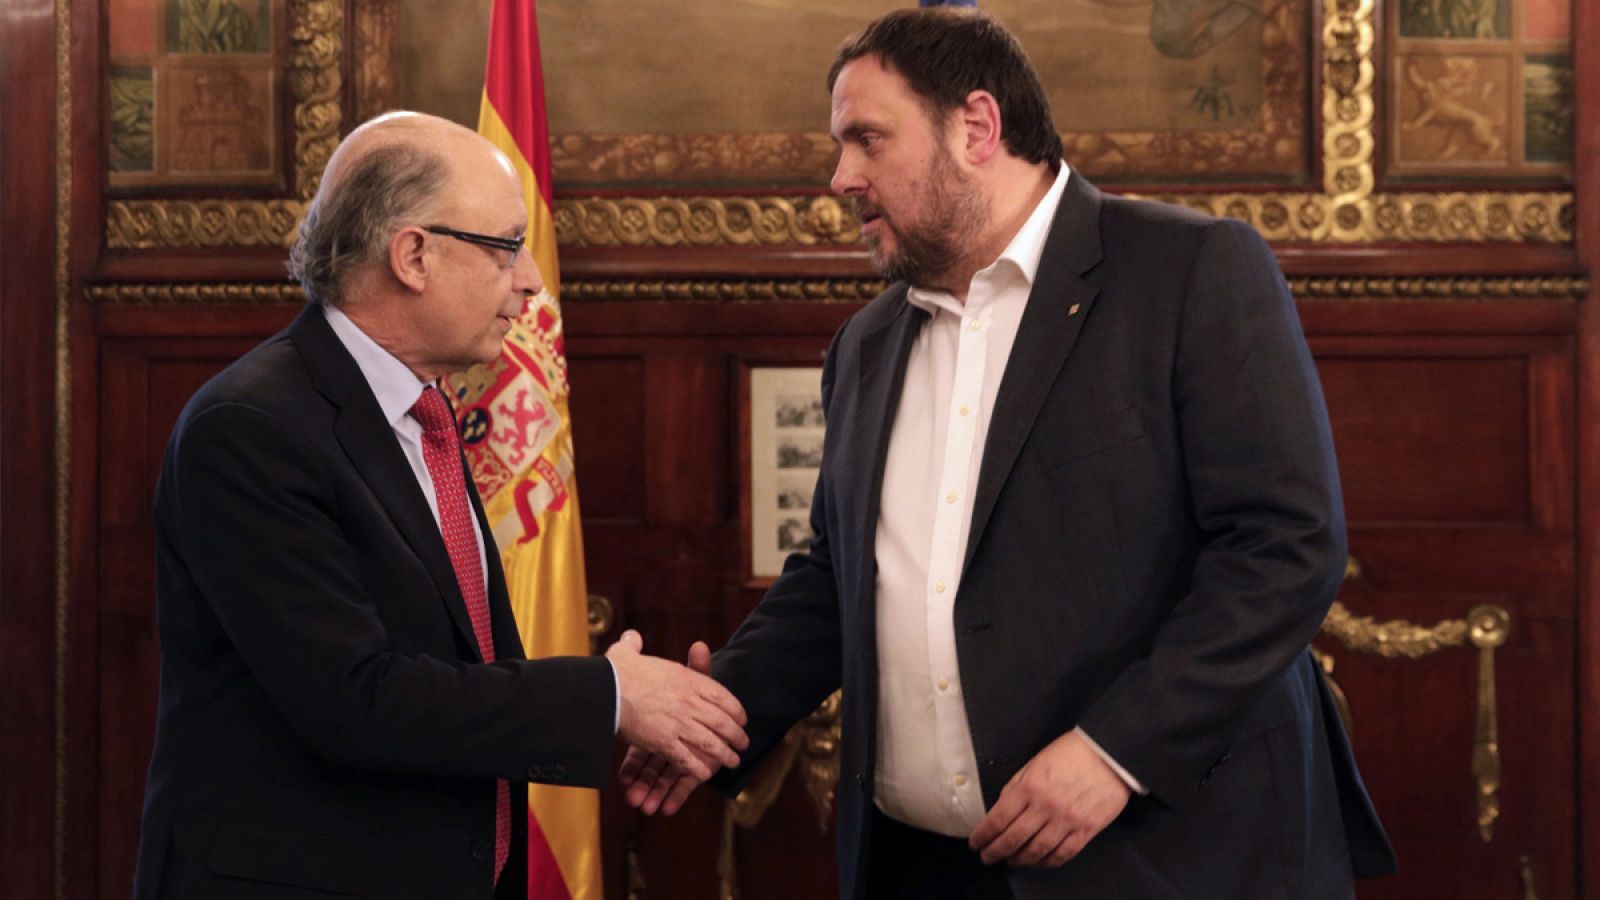 El ministro de Hacienda y Administraciones Públicas, Cristóbal Montoro, recibe al vicepresidente y conseller económico de la Generalitat, Oriol Junqueras